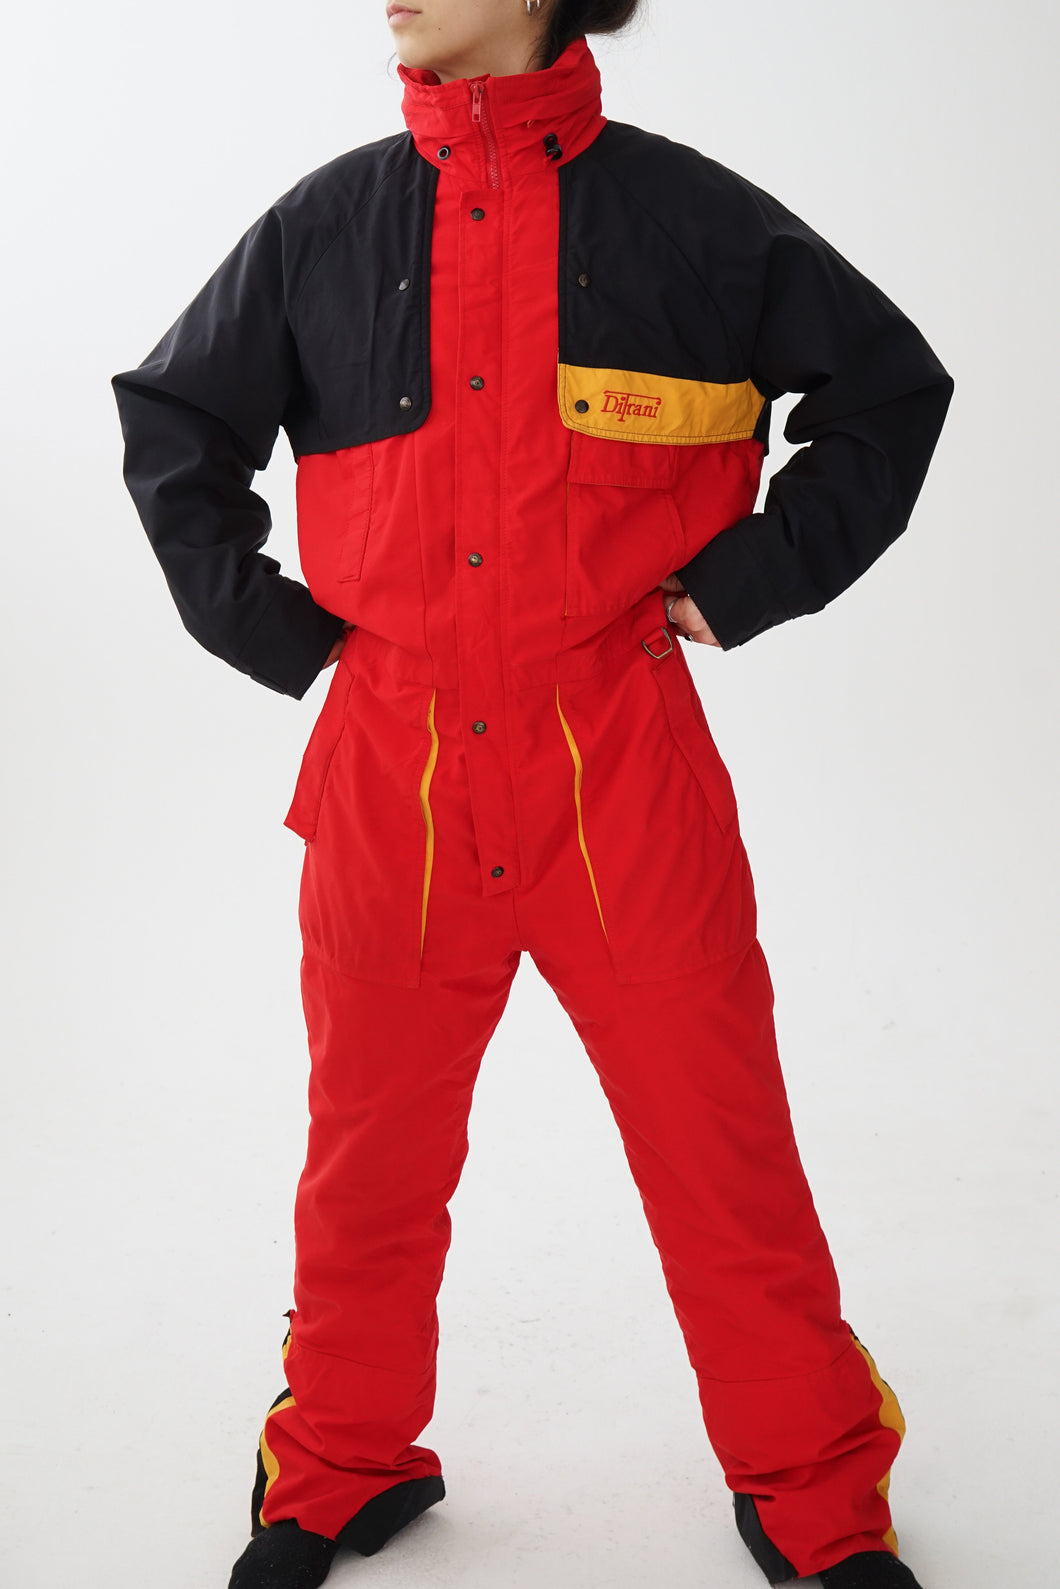 One piece ski suit snow suit Ditrani rouge avec accents jaunes et noirs pour homme taille M-L